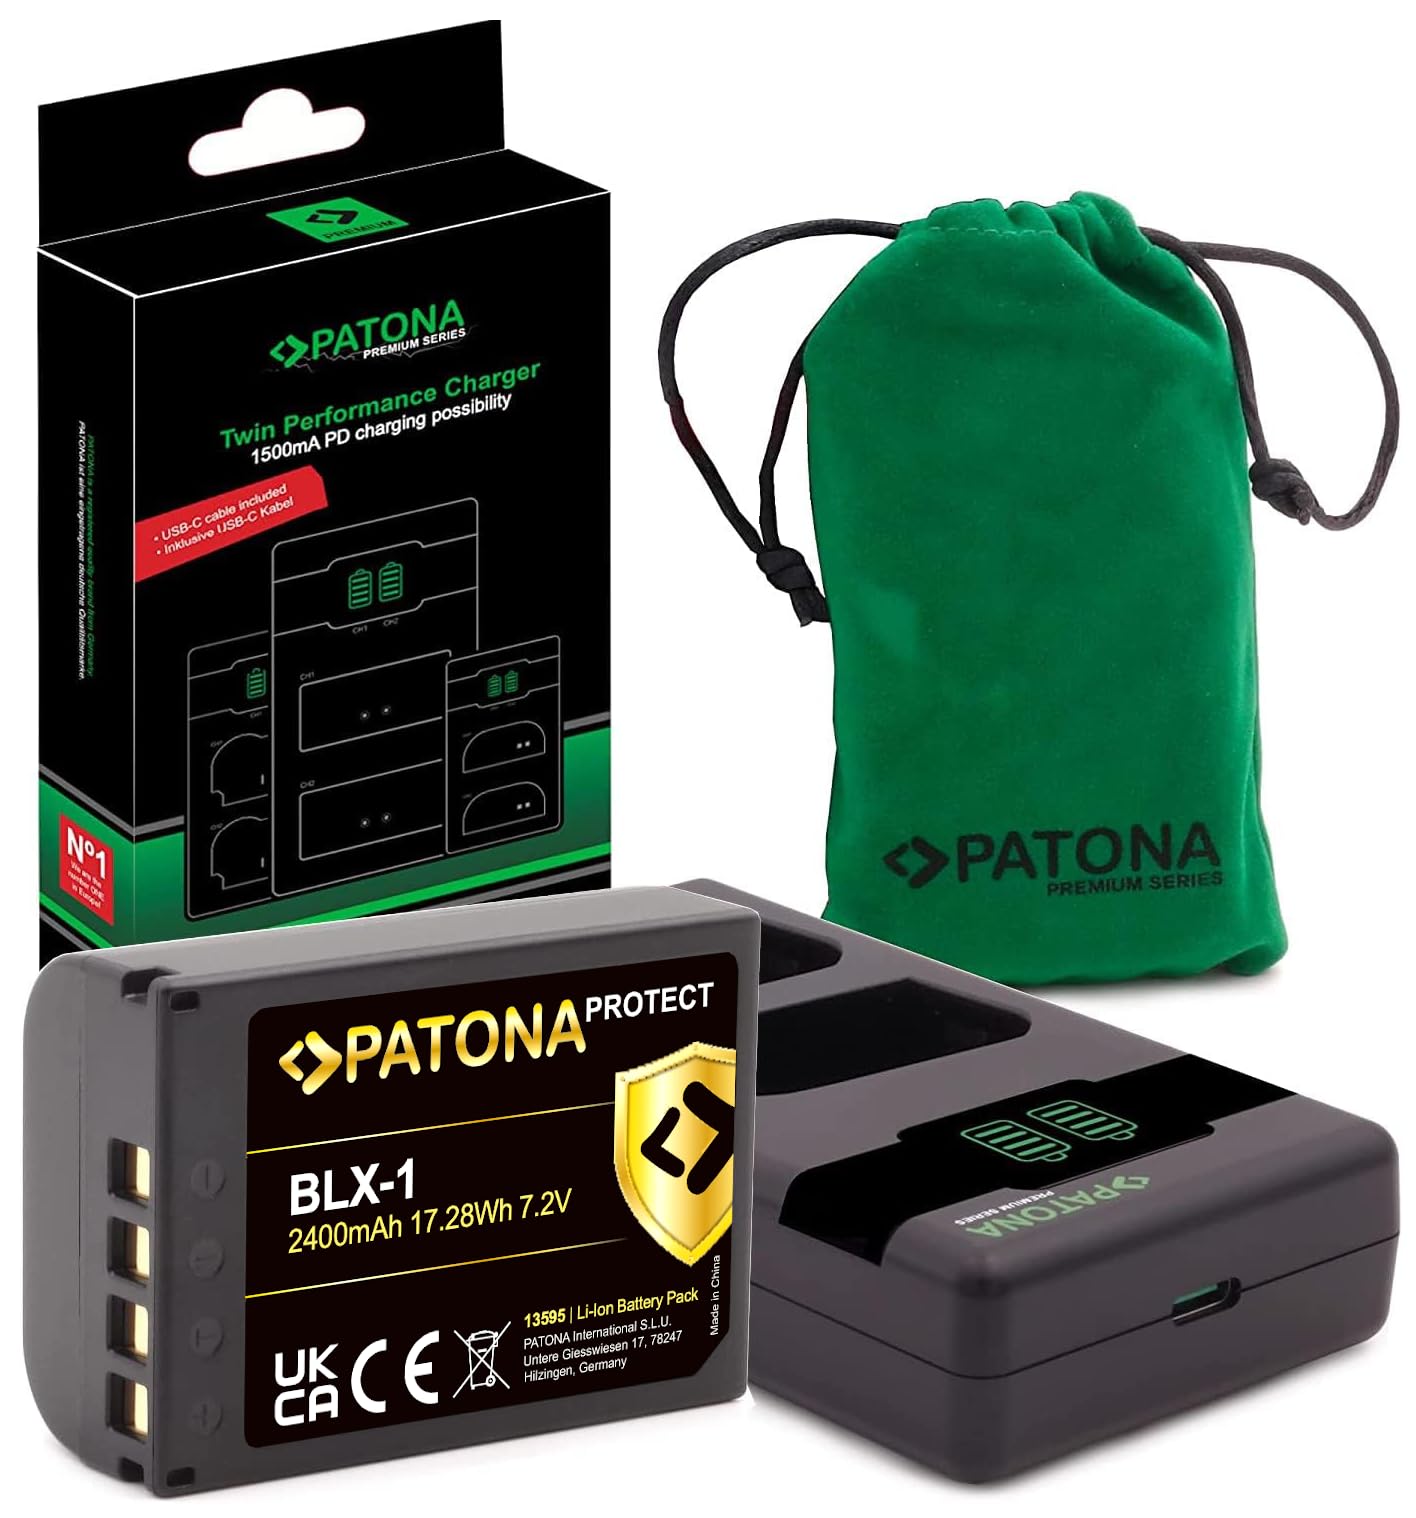 PATONA V1 Protect Akku BLX-1 (2400mAh) mit NTC Sensor und V1 Gehäuse - 1500mA PD Performance USB Ladegerät 161713 - Kompatibel mit OM System BLX-1